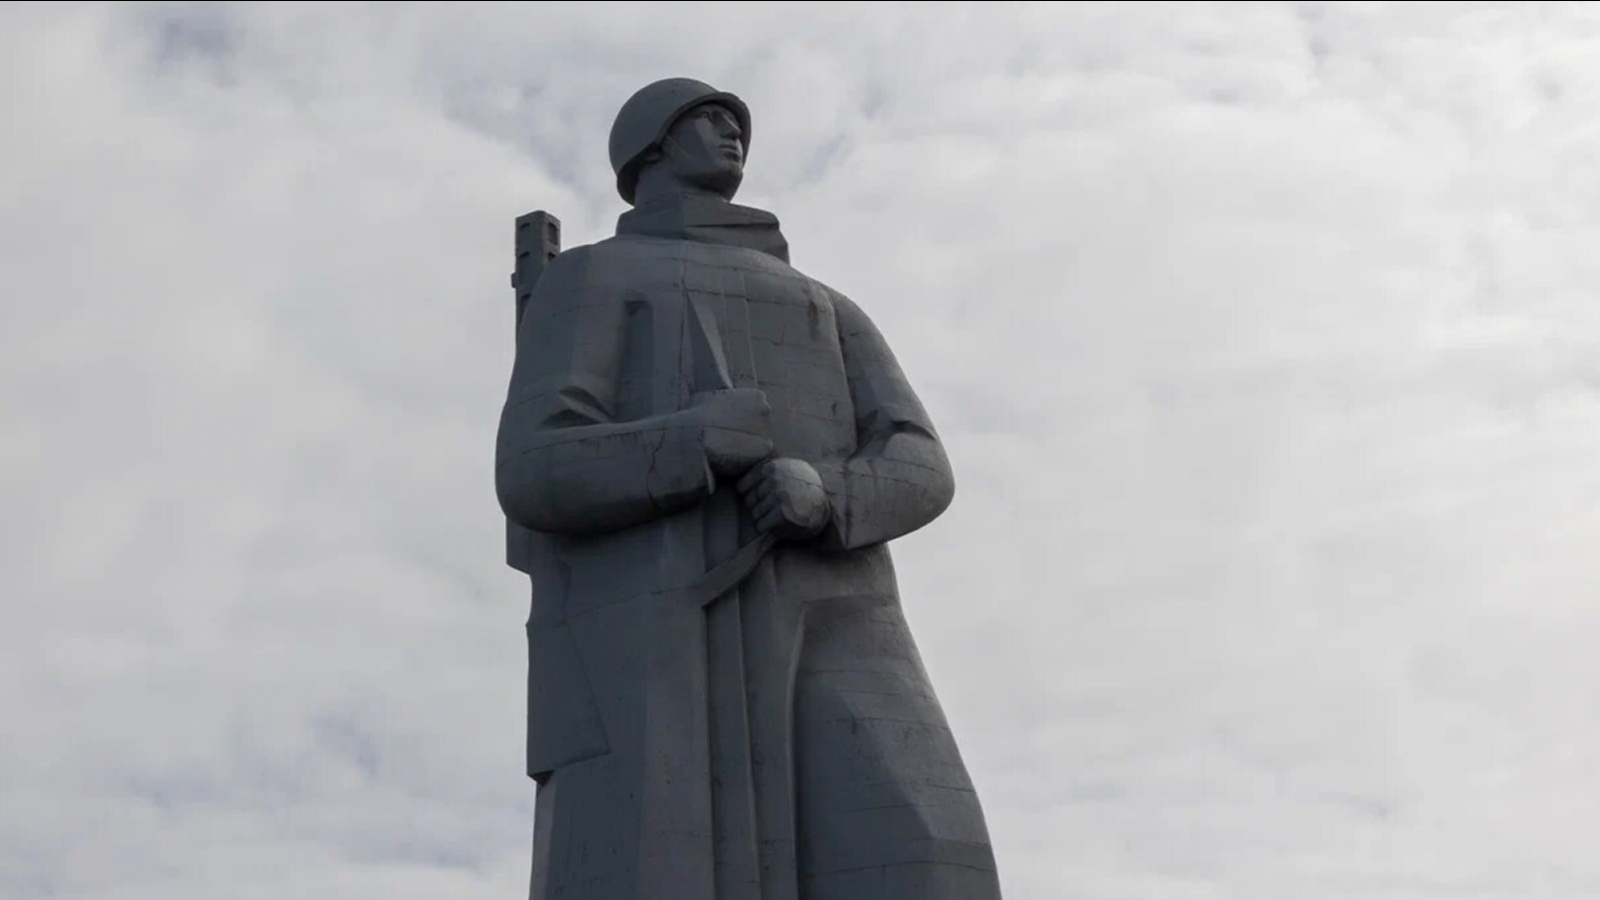 Губернатор: За годы войны на Мурманск было сброшено 185 тысяч бомб [видео]